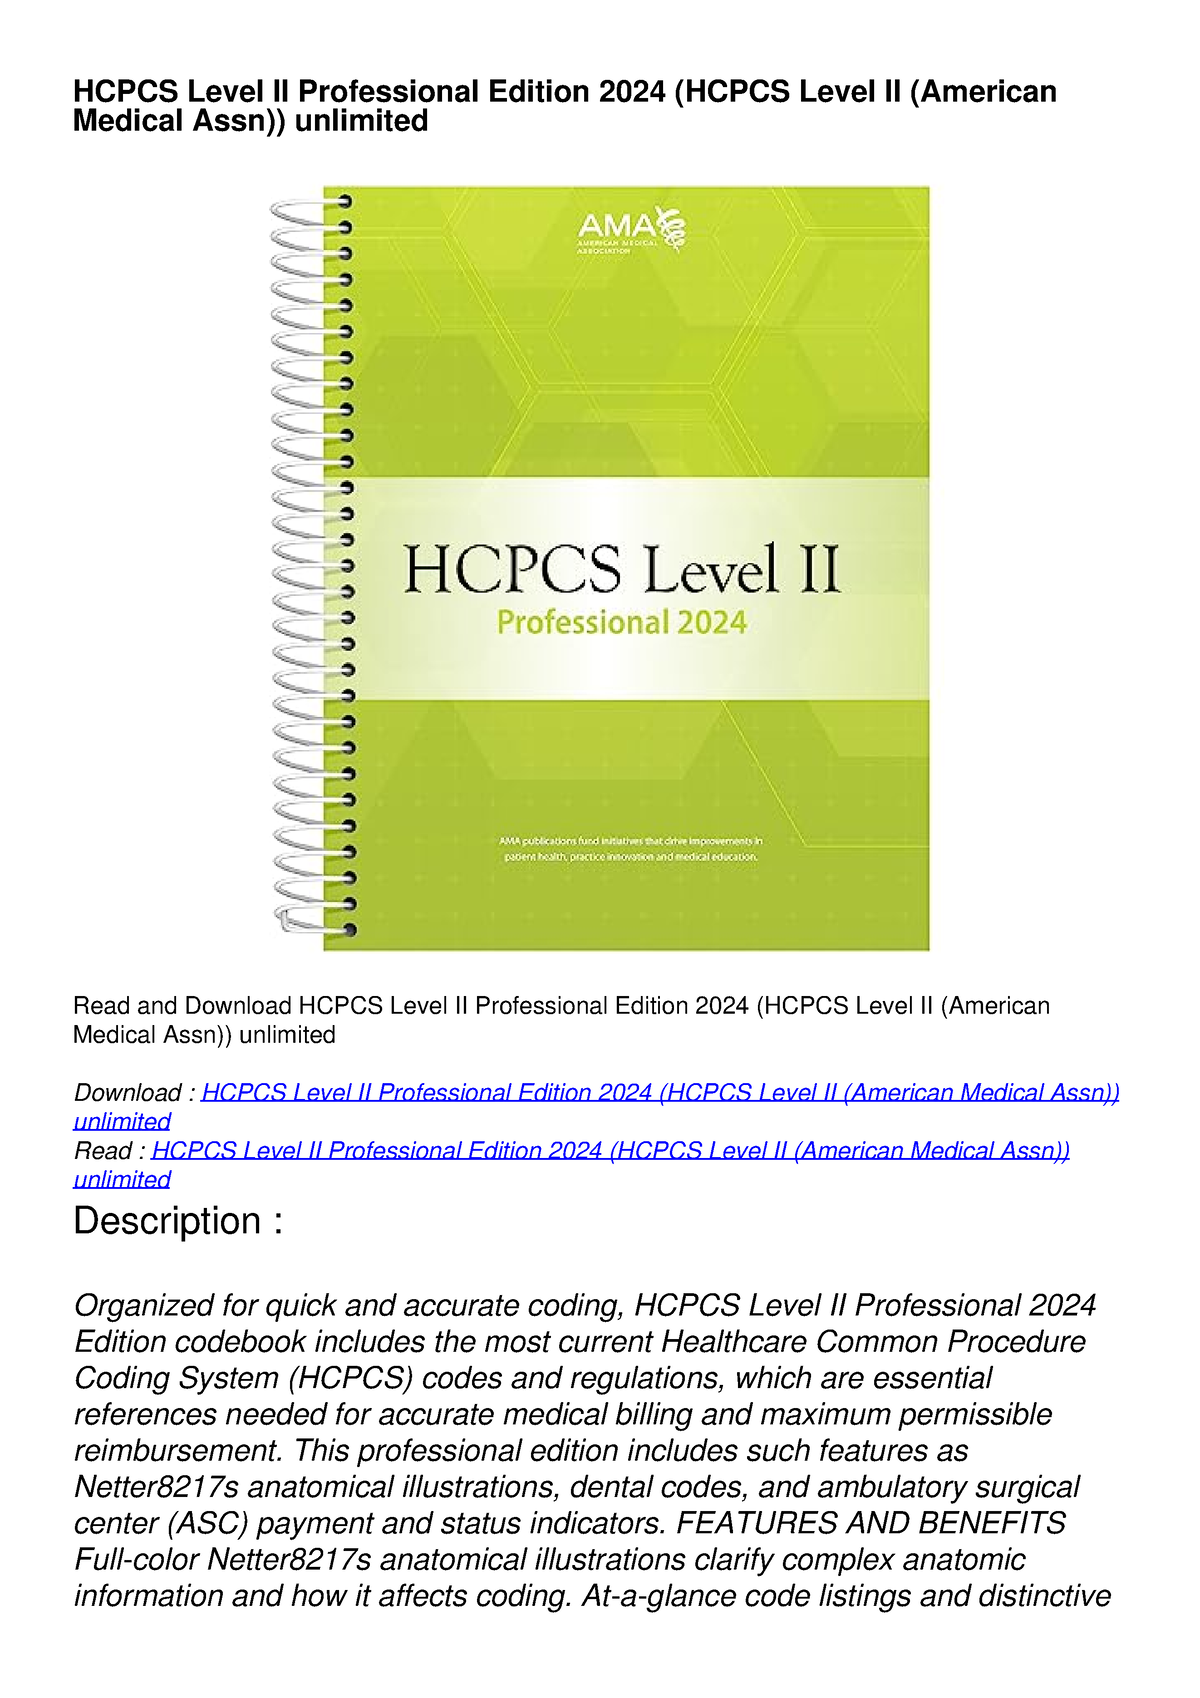 READ HCPCS Level II Professional Edition 2024 (HCPCS Level II (American